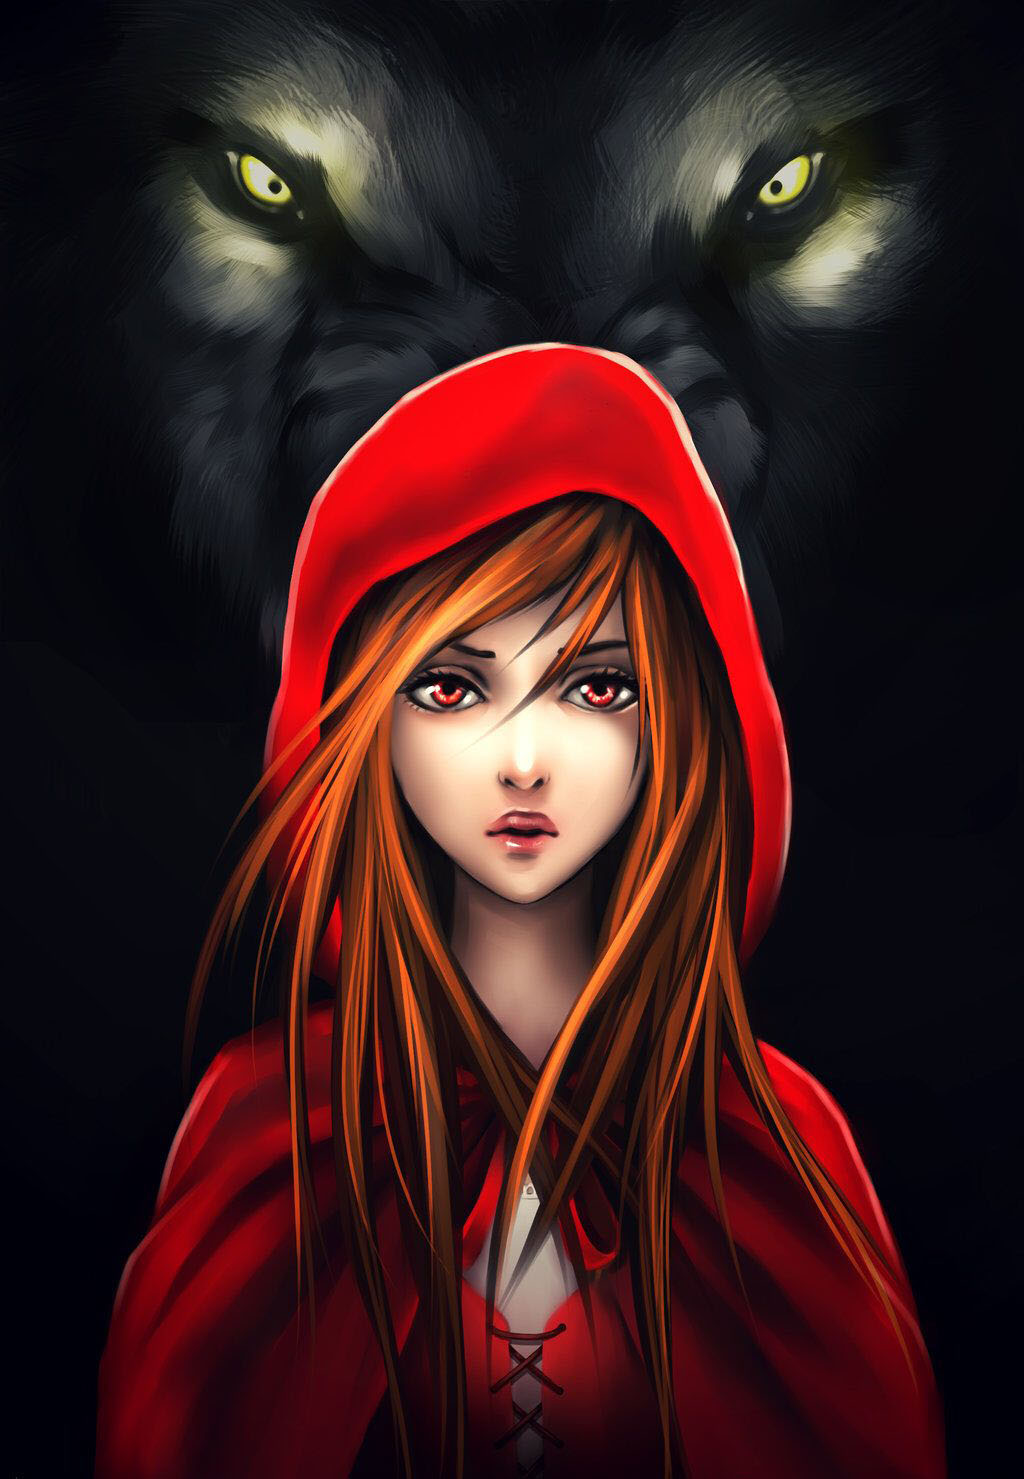 Красная шапочка и волчий взгляд